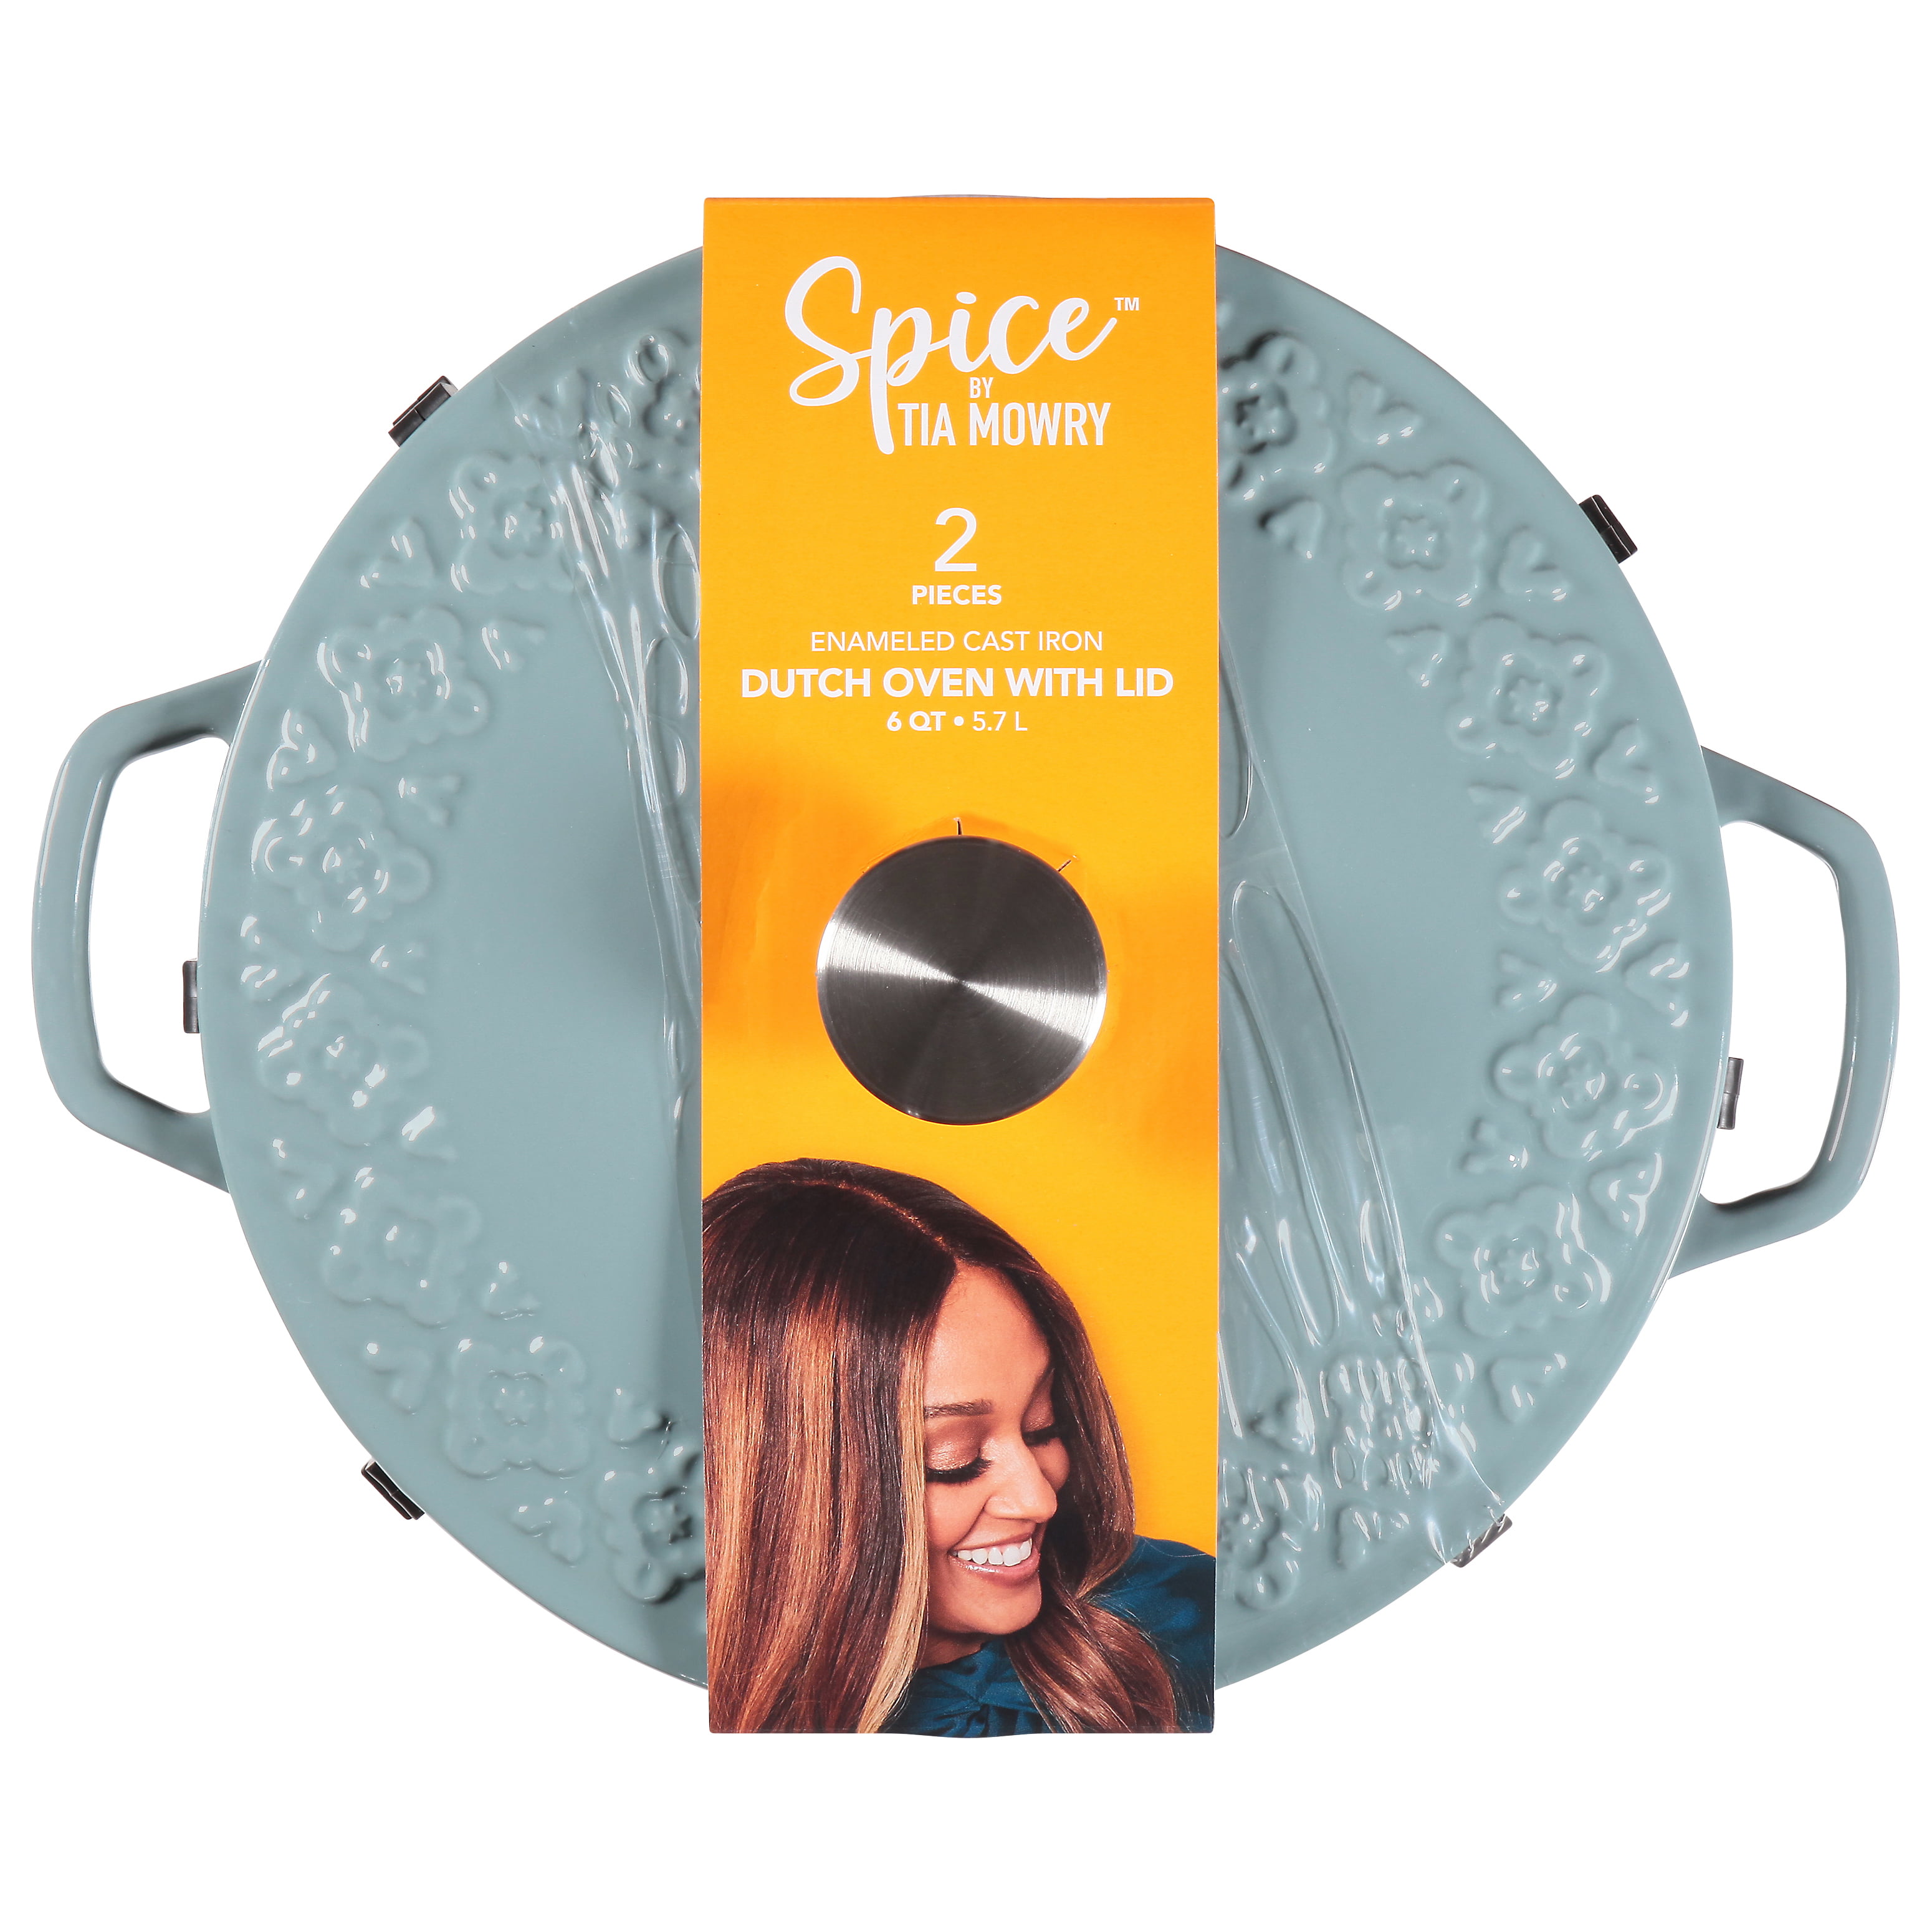 Spice by Tia Mowry Savory Saffron 6-Quart Cast Iron Dutch Oven - Aqua Blue  